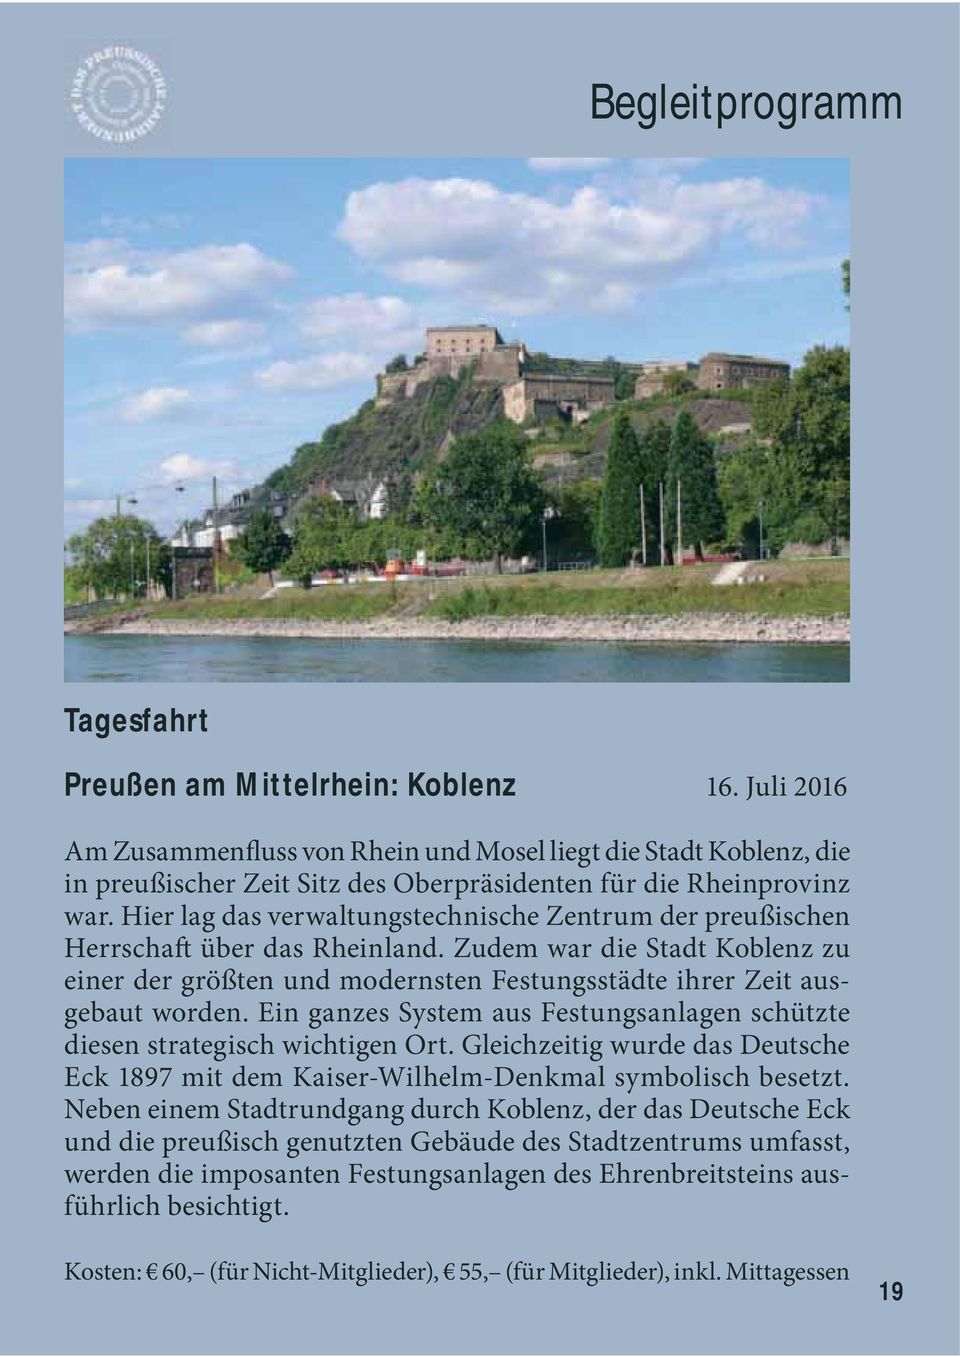 Hier lag das verwaltungstechnische Zentrum der preußischen Herrschaft über das Rheinland. Zudem war die Stadt Koblenz zu einer der größten und modernsten Festungsstädte ihrer Zeit ausgebaut worden.